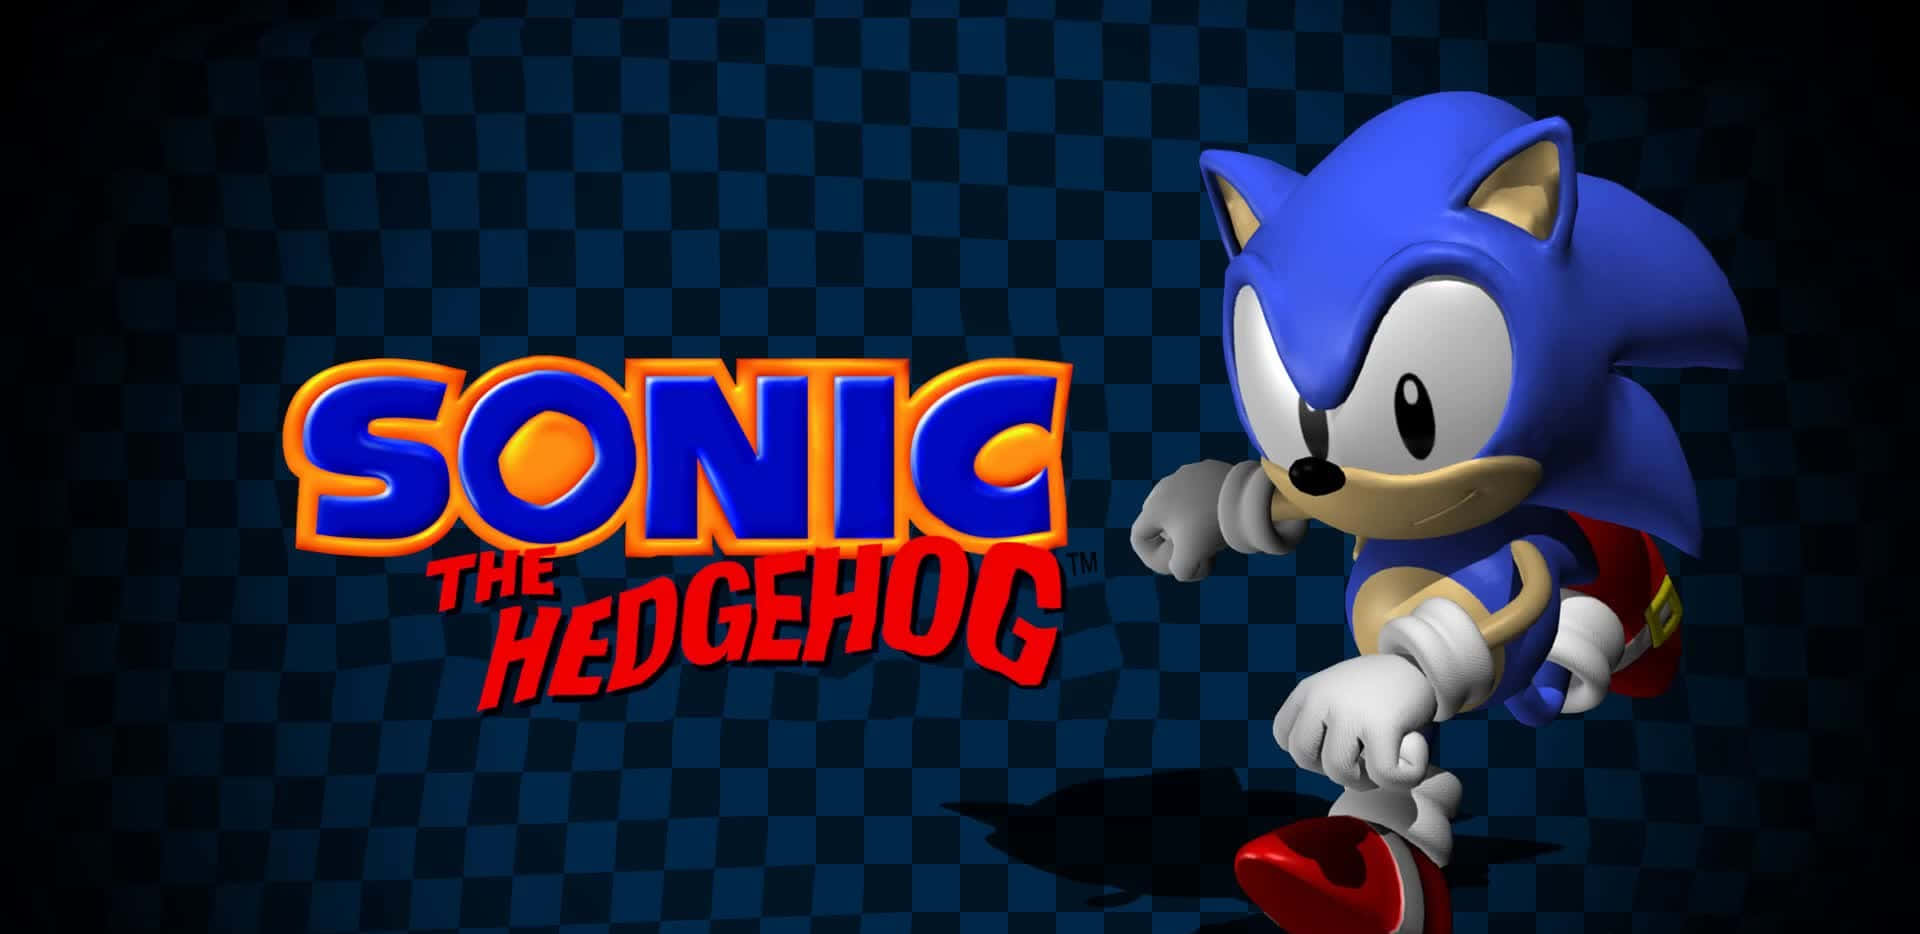 Segassonic The Hedgehog Saust Mit Hochgeschwindigkeit Durch Eine Neonbeleuchtete Stadt Auf Einer Actionreichen Mission. Wallpaper